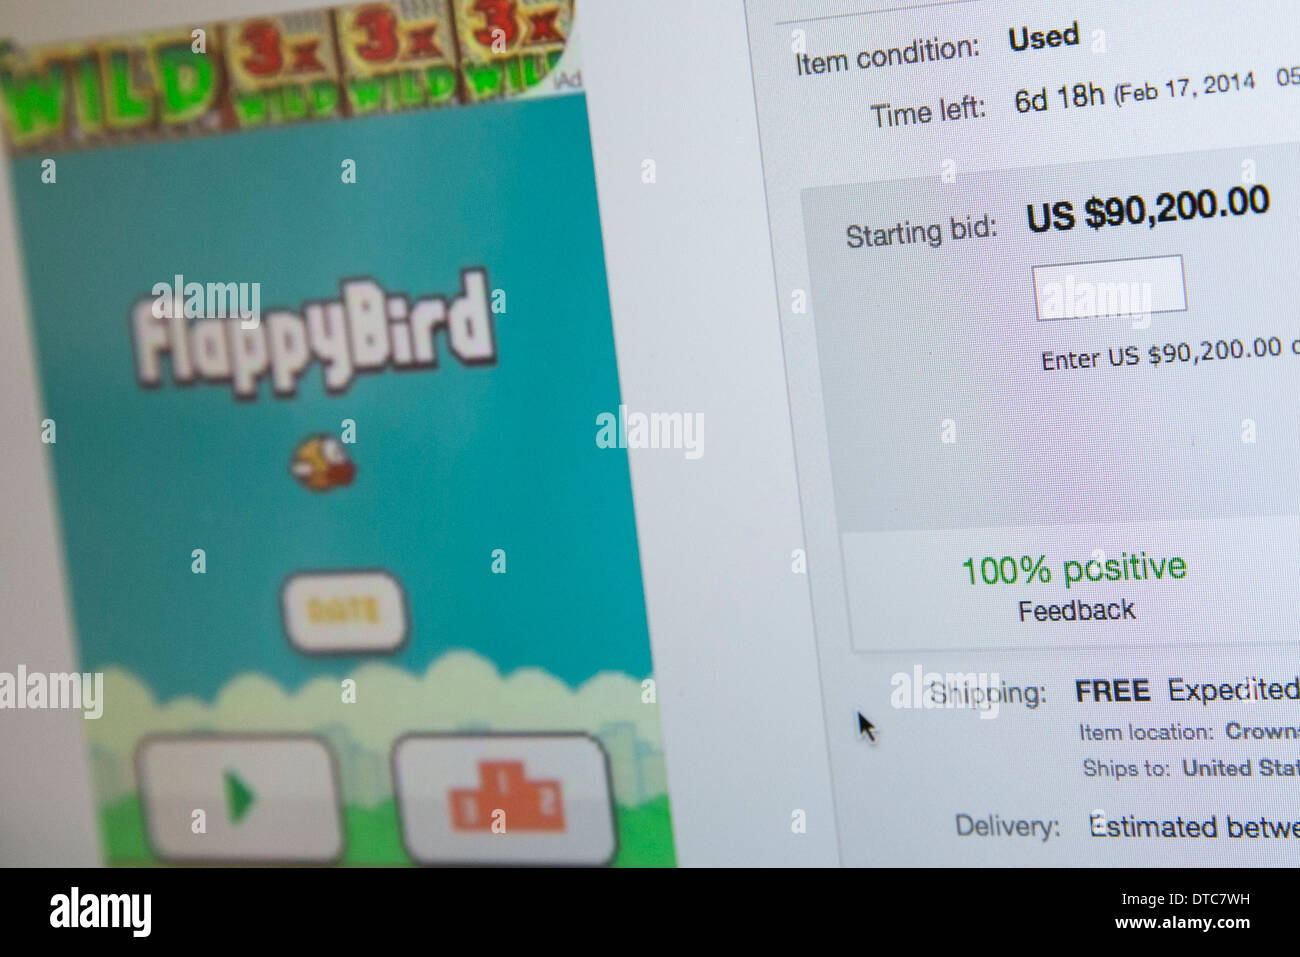 Un iPhone cargado con la app FlappyBird enumeradas en eBay por $90,200.00. Foto de stock